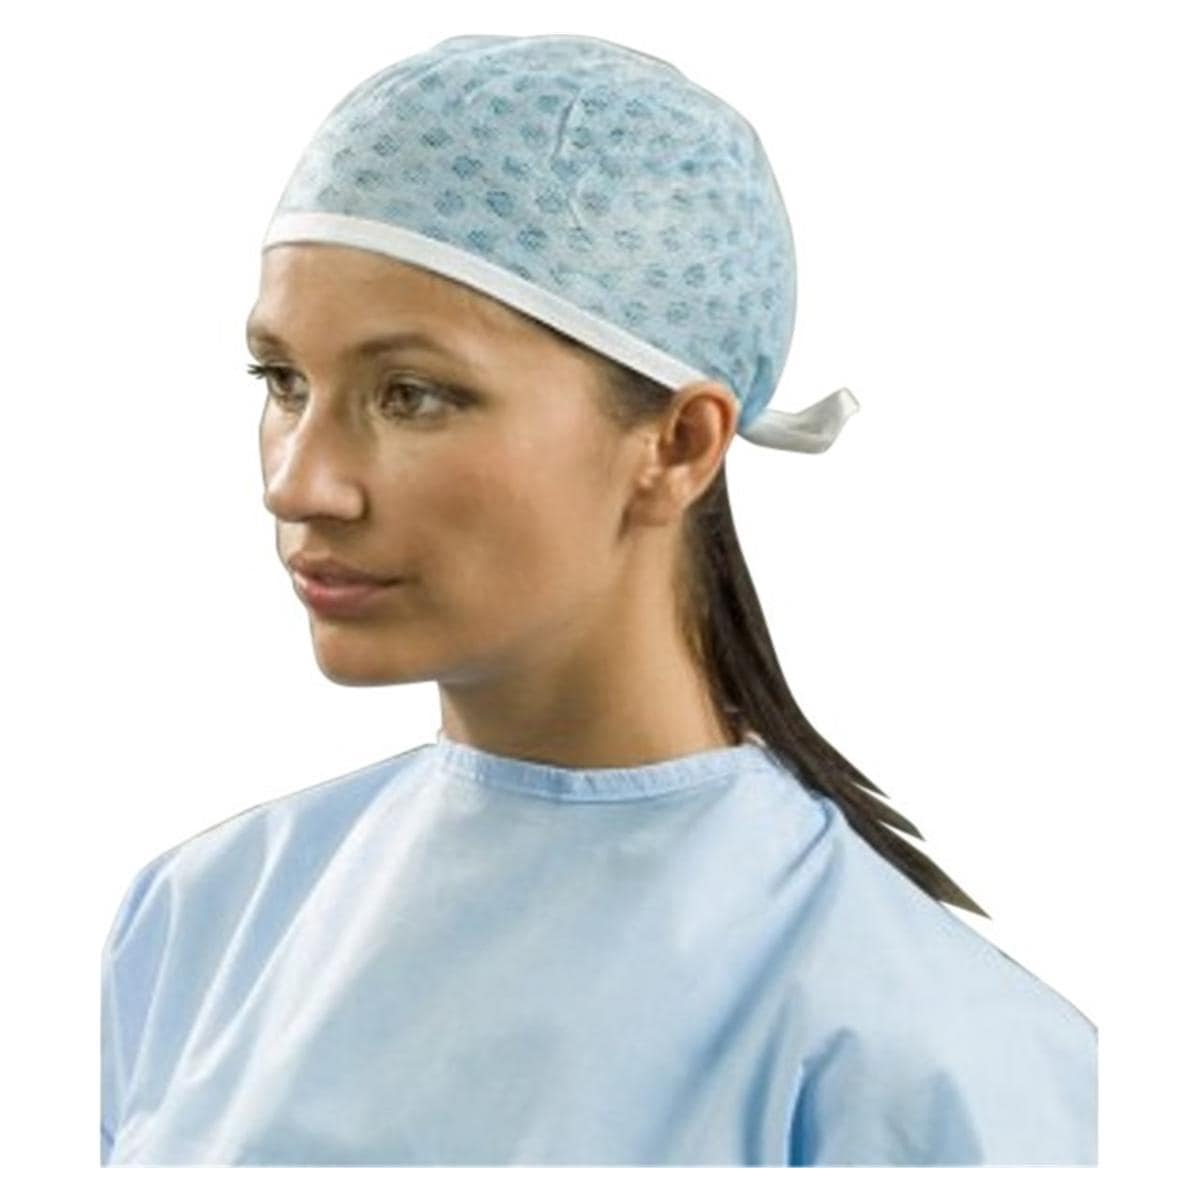 OK - Chirurgische operatiemuts - Model cap, lichtblauw 10.M0019 - 100 stuks